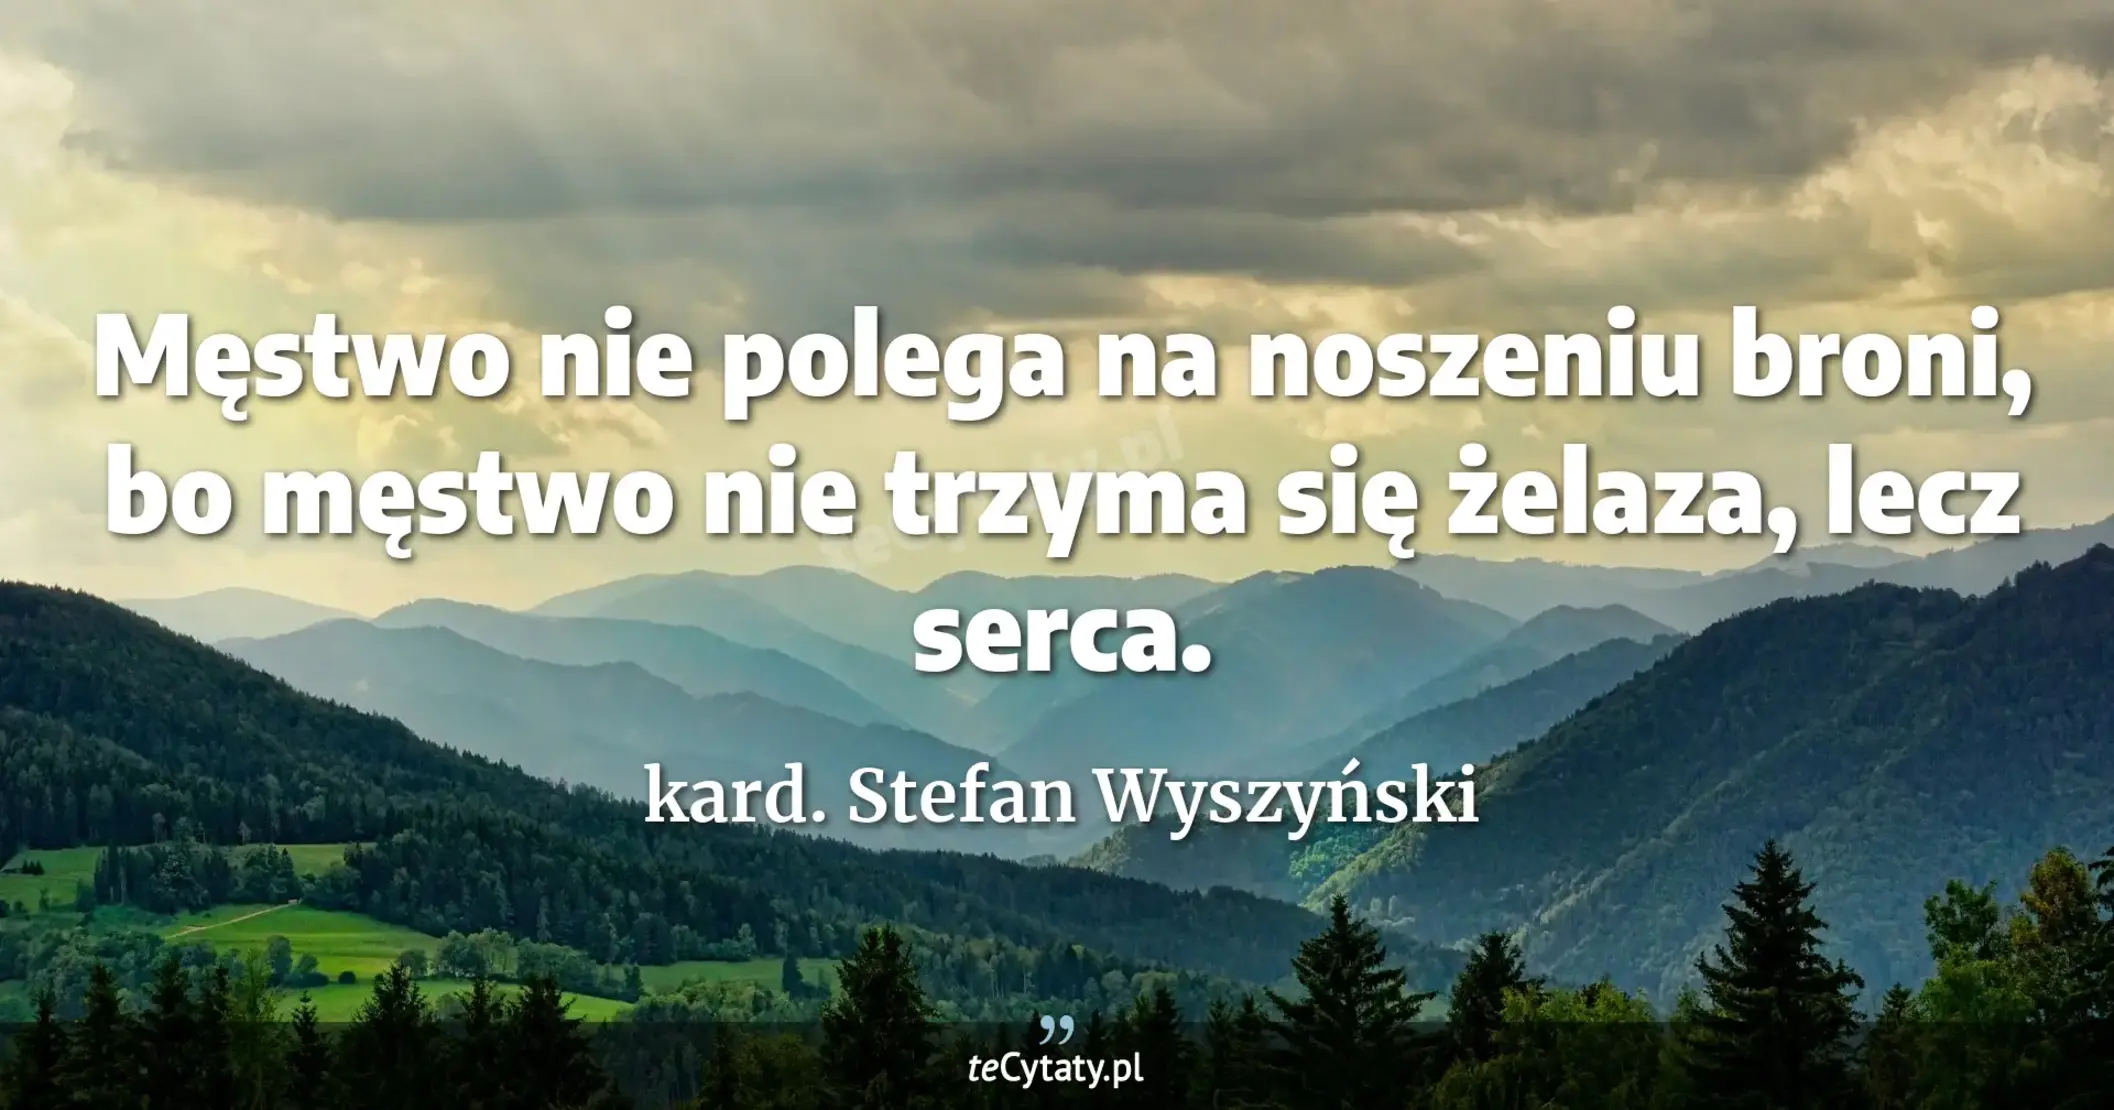 Męstwo nie polega na noszeniu broni, bo męstwo nie trzyma się żelaza, lecz serca. - kard. Stefan Wyszyński